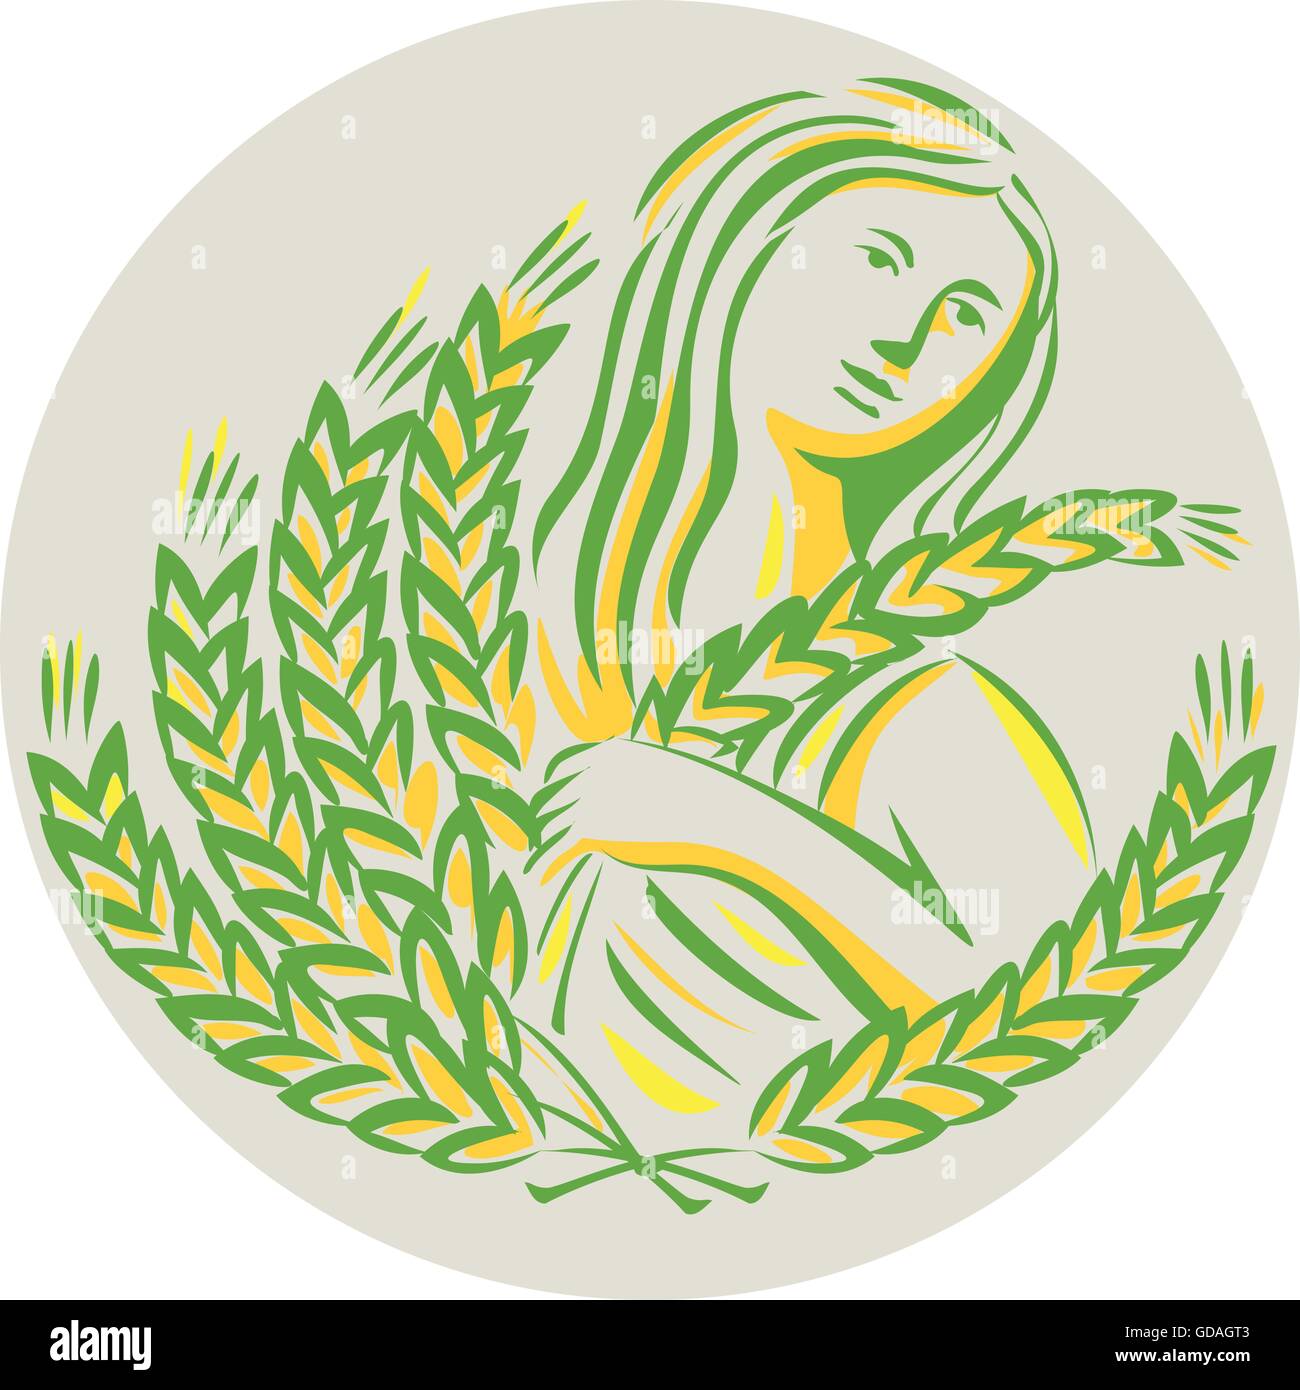 Ilustración mostrando Deméter, la diosa griega de la cosecha y la agricultura, quien presidió la celebración de la fertilidad y los granos de trigo en grano mirando hacia el lado, visto desde la parte delantera establecido dentro del círculo hecho en estilo retro. Ilustración del Vector